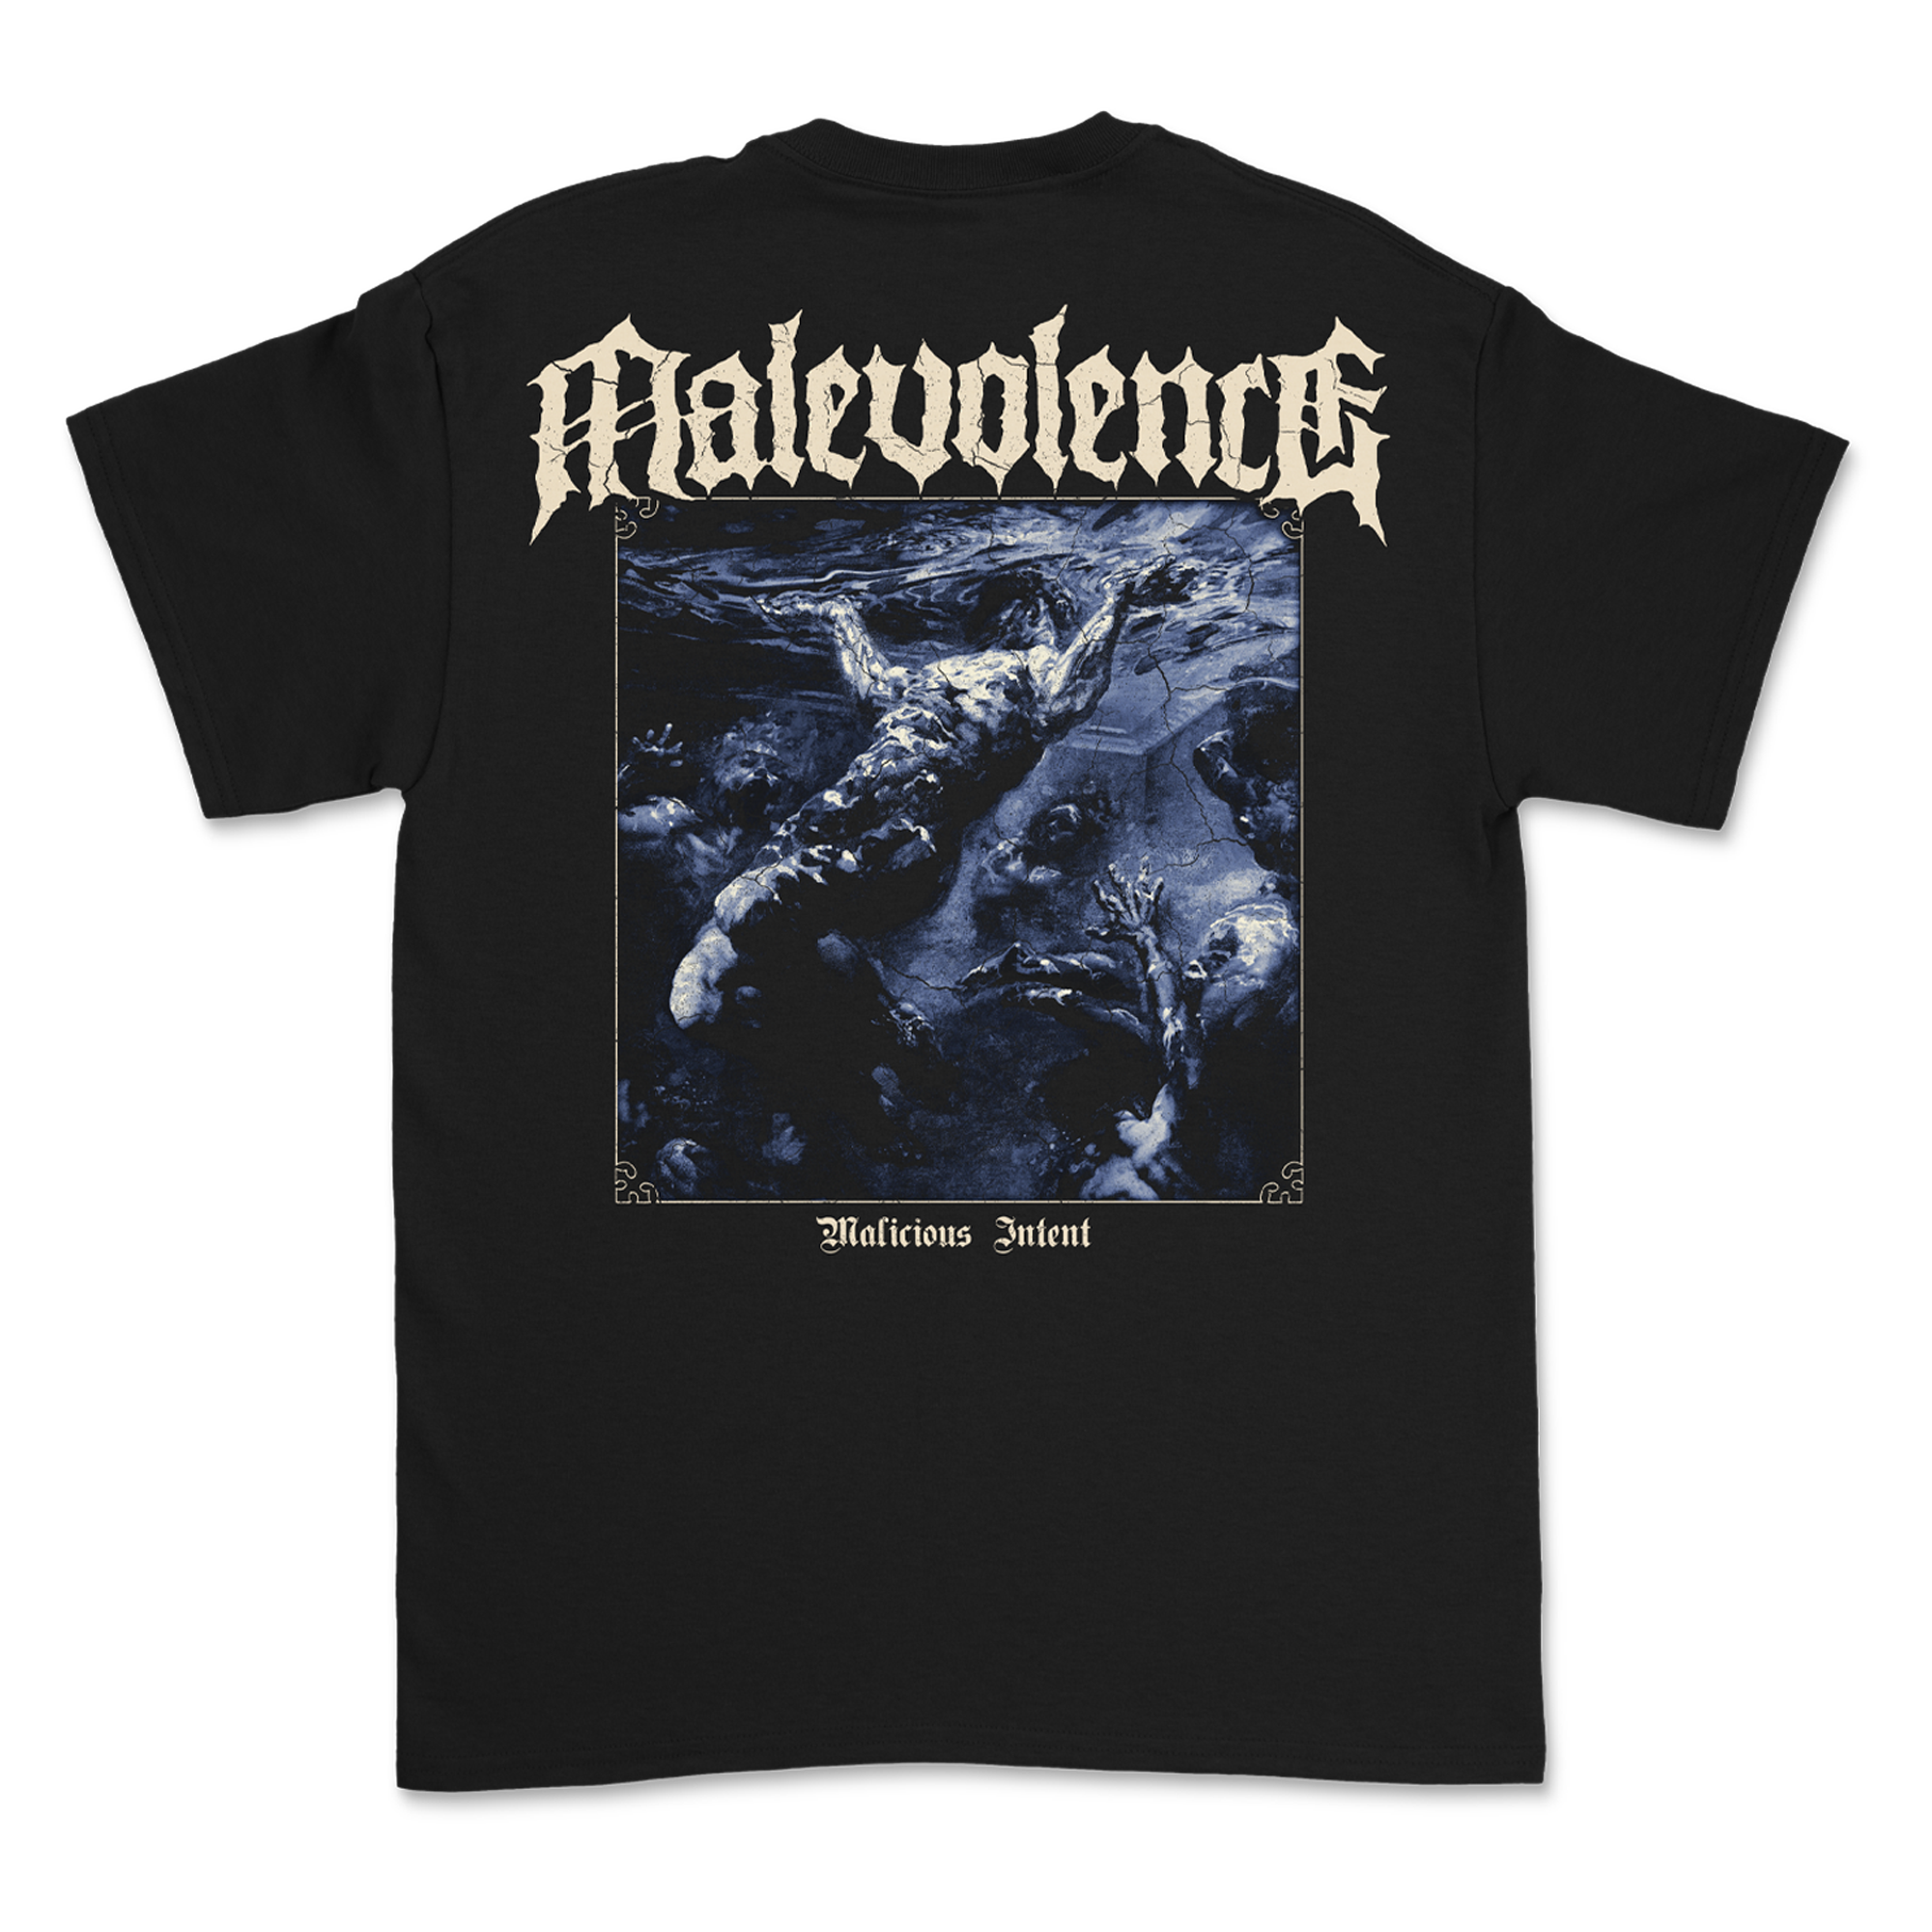 Malevolence - Malicious Intent T-Shirt